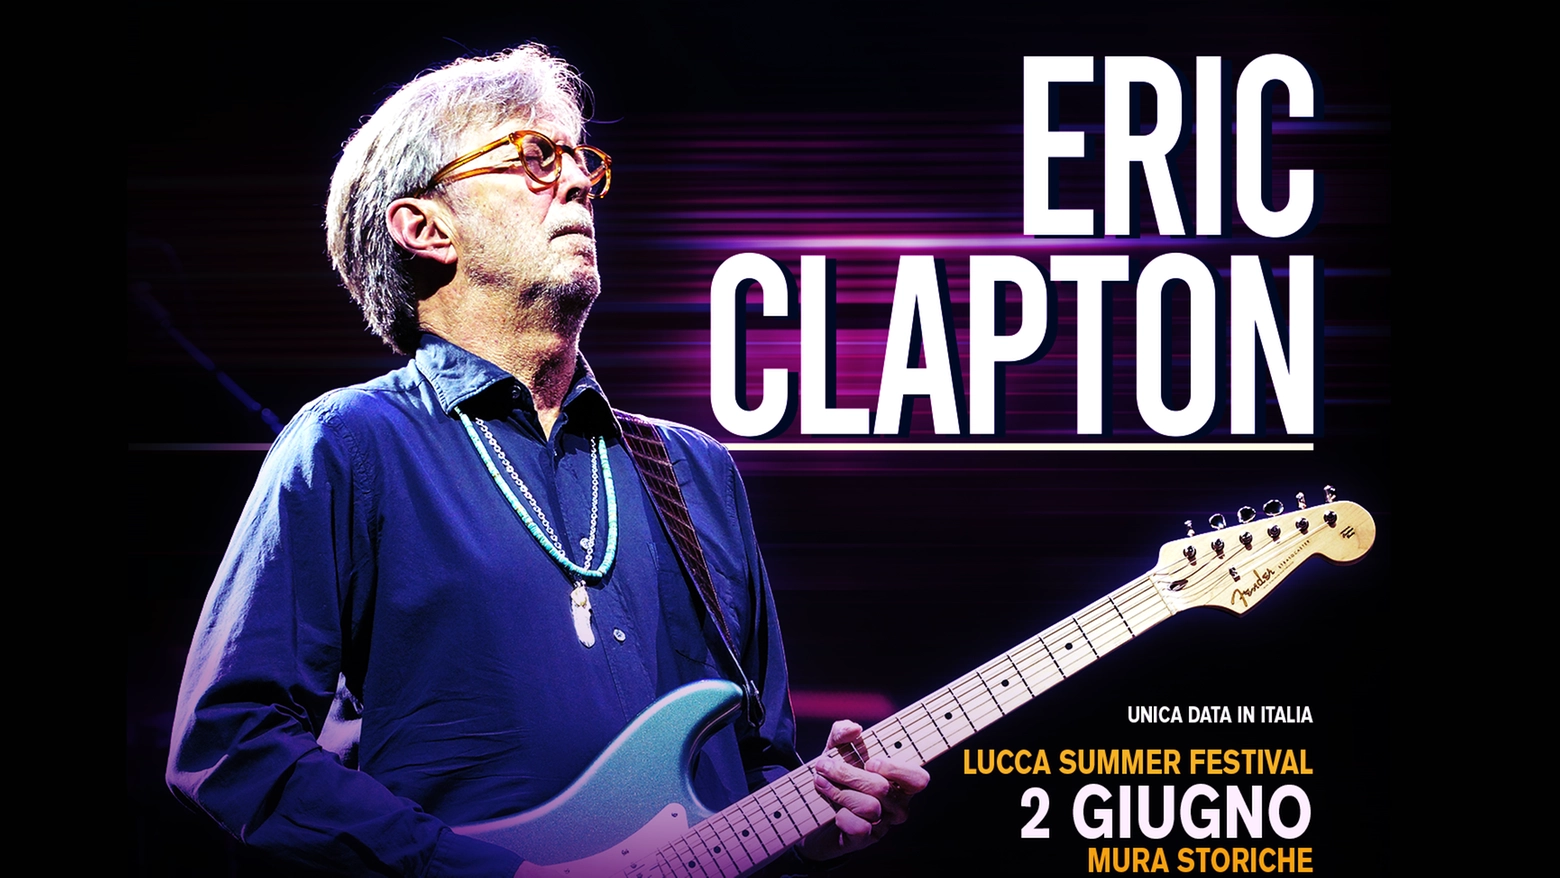 Eric Clapton in concerto a Lucca il 2 giugno